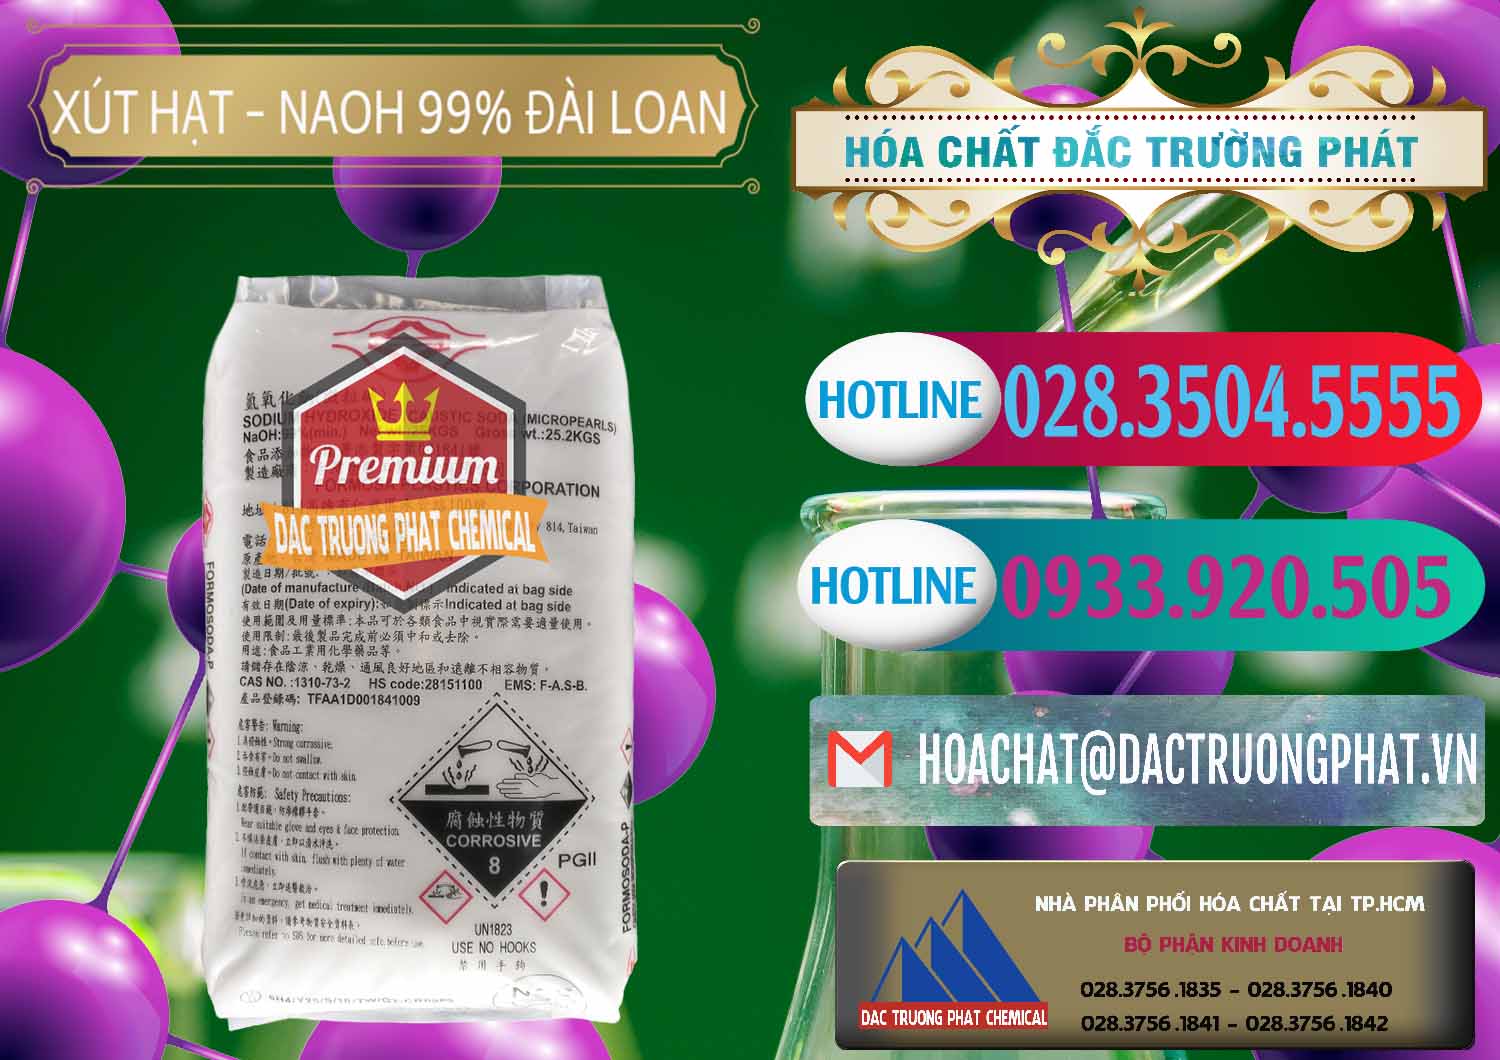 Đơn vị chuyên bán - cung ứng Xút Hạt - NaOH Bột 99% Đài Loan Taiwan Formosa - 0167 - Nơi phân phối và kinh doanh hóa chất tại TP.HCM - truongphat.vn